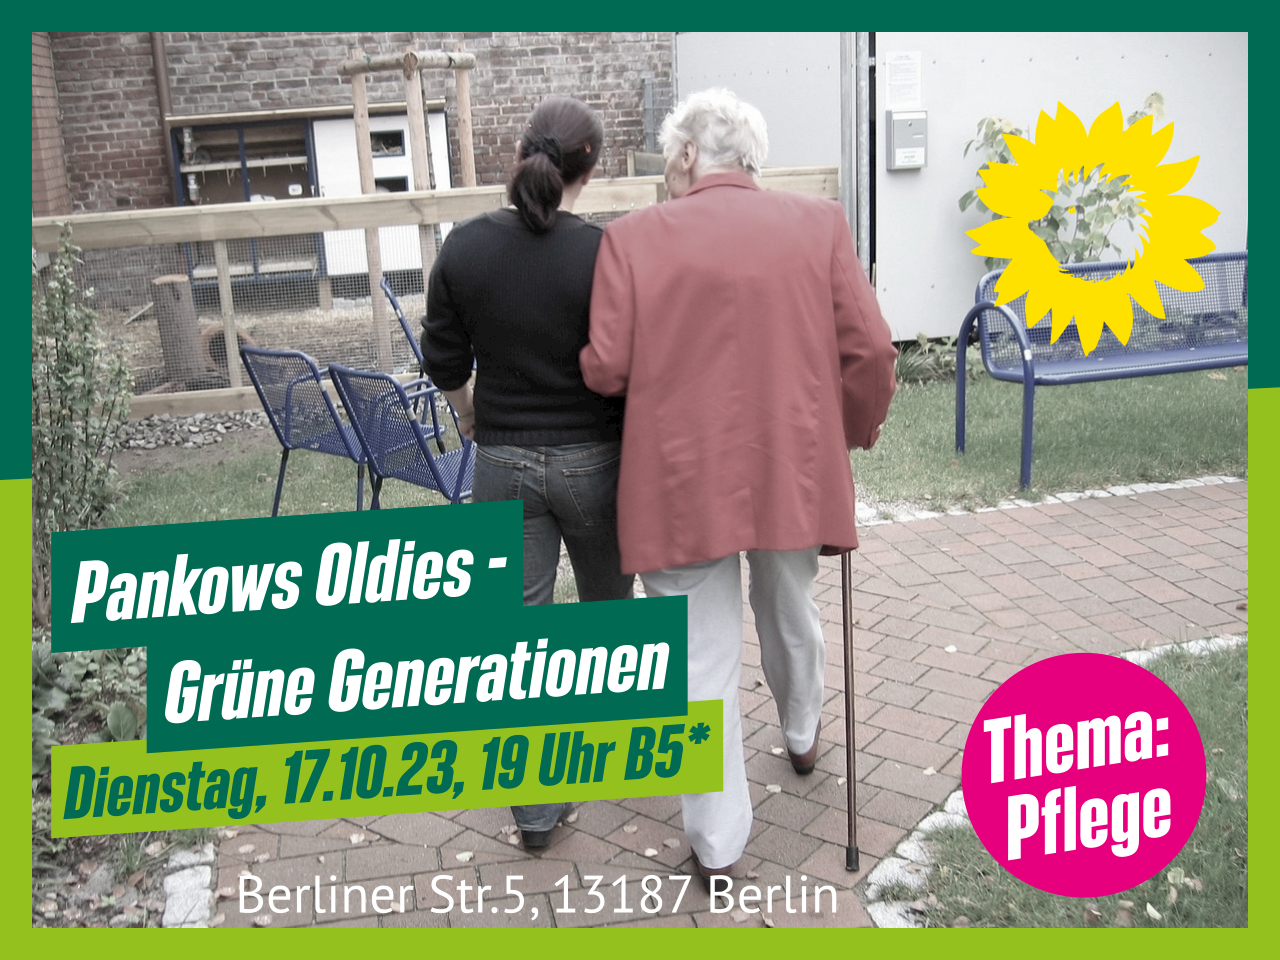 Ein Sharepic für die Sitzung der AG "Pankows Oldies – Grüne Generationen". Zwei Personen gehen in einem Hof einen Weg entlang; eine hat weißes Haar und nutzt einen Gehstock, die andere stützt sie zusätzlich. Dazu die Veranstaltungsinformationen.